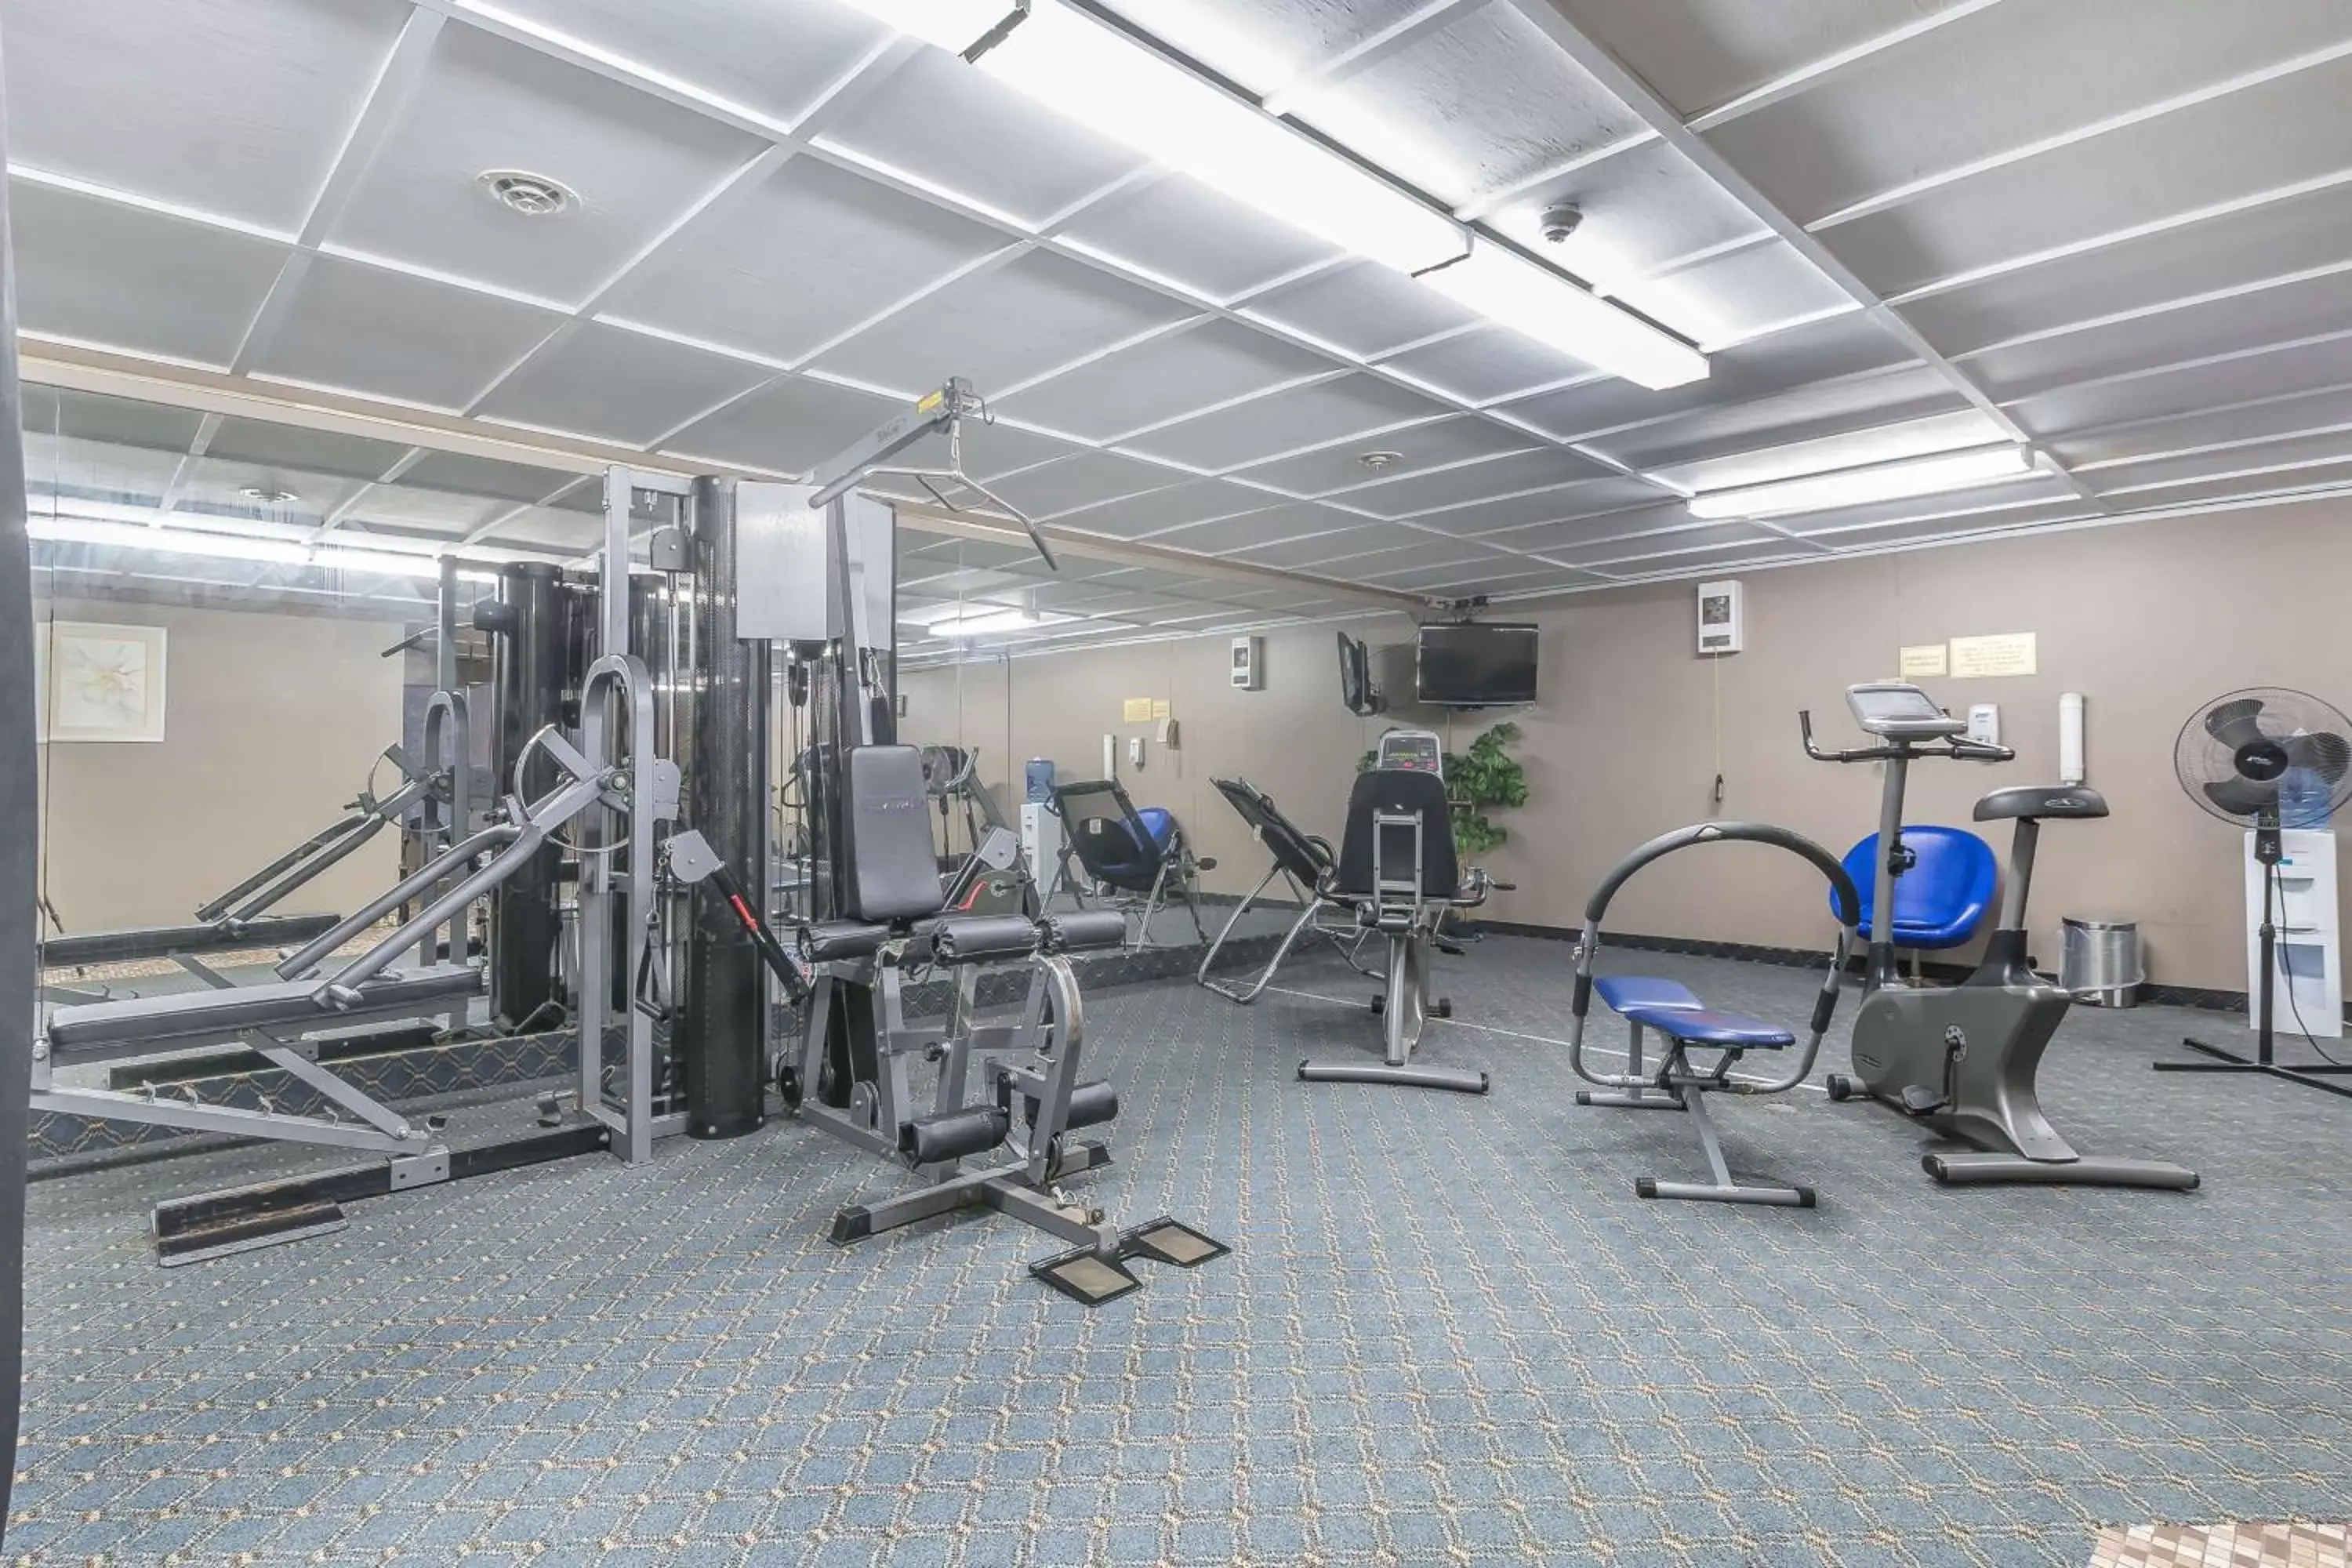 Fitness centre/facilities, Fitness Center/Facilities in Jolly Roger Inn & Resort